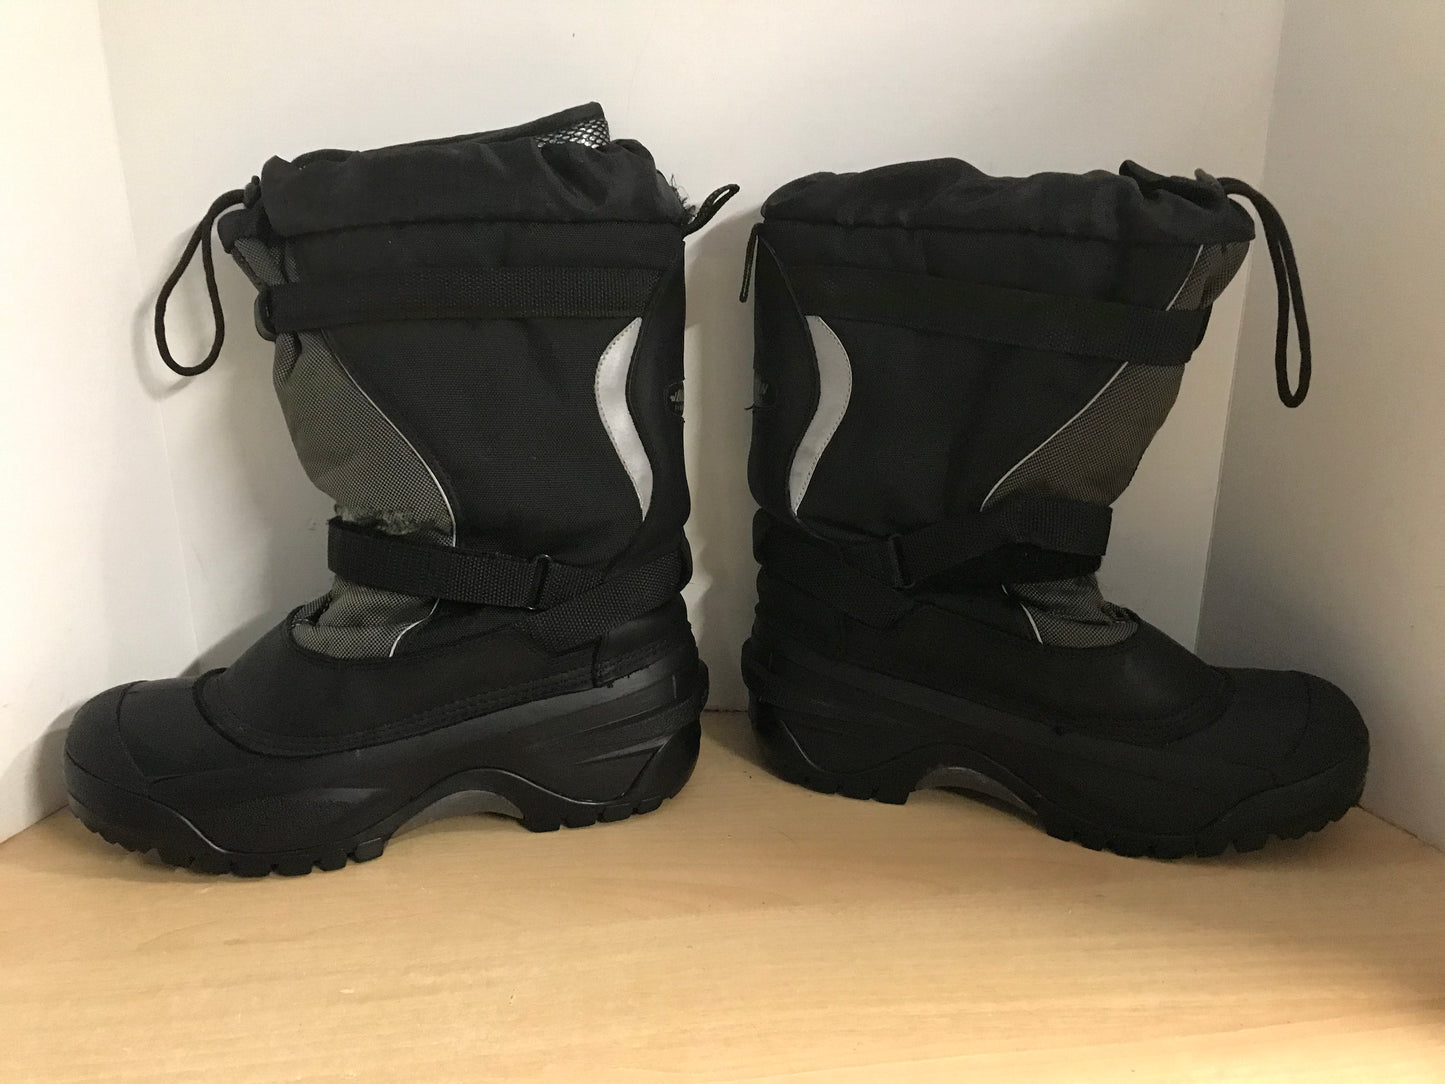 Winter Boots Men's Size 11 Baffin With Liner Black Minor Wear Around Strap